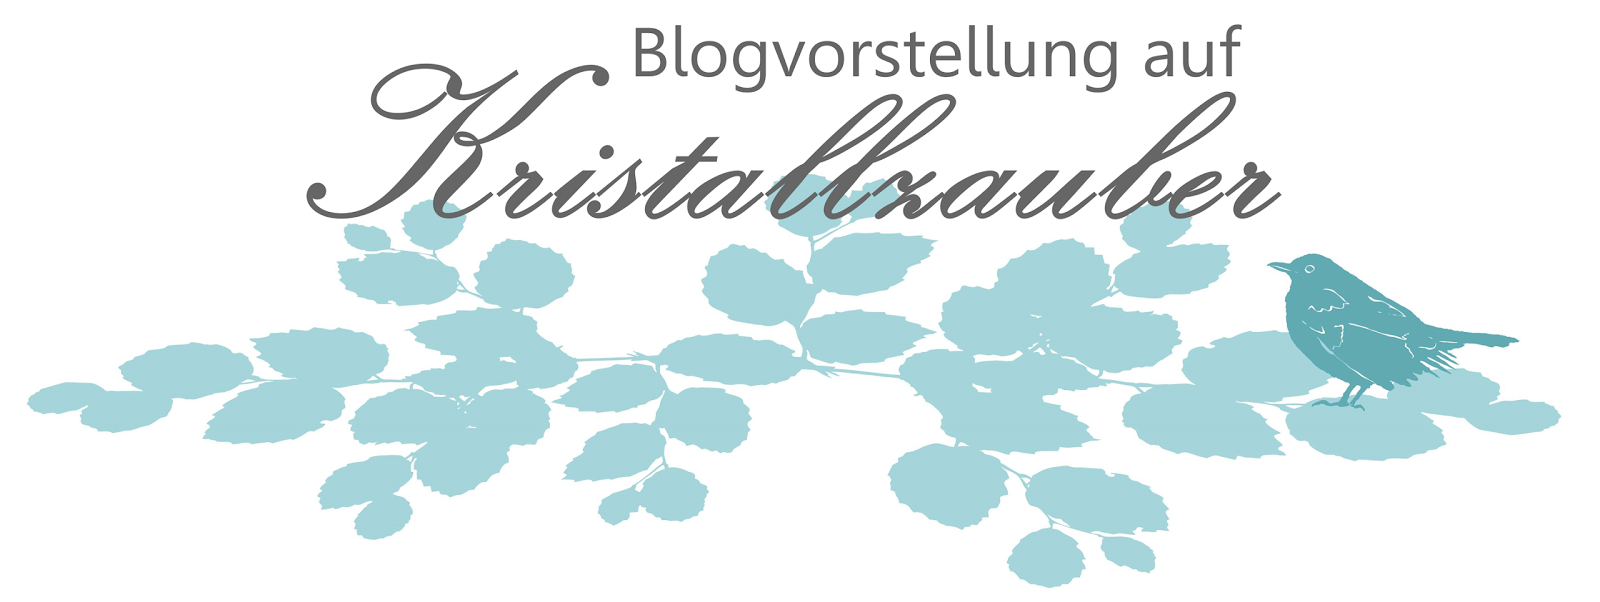 http://kristallzauber.blogspot.de/p/blogvorstellung.html